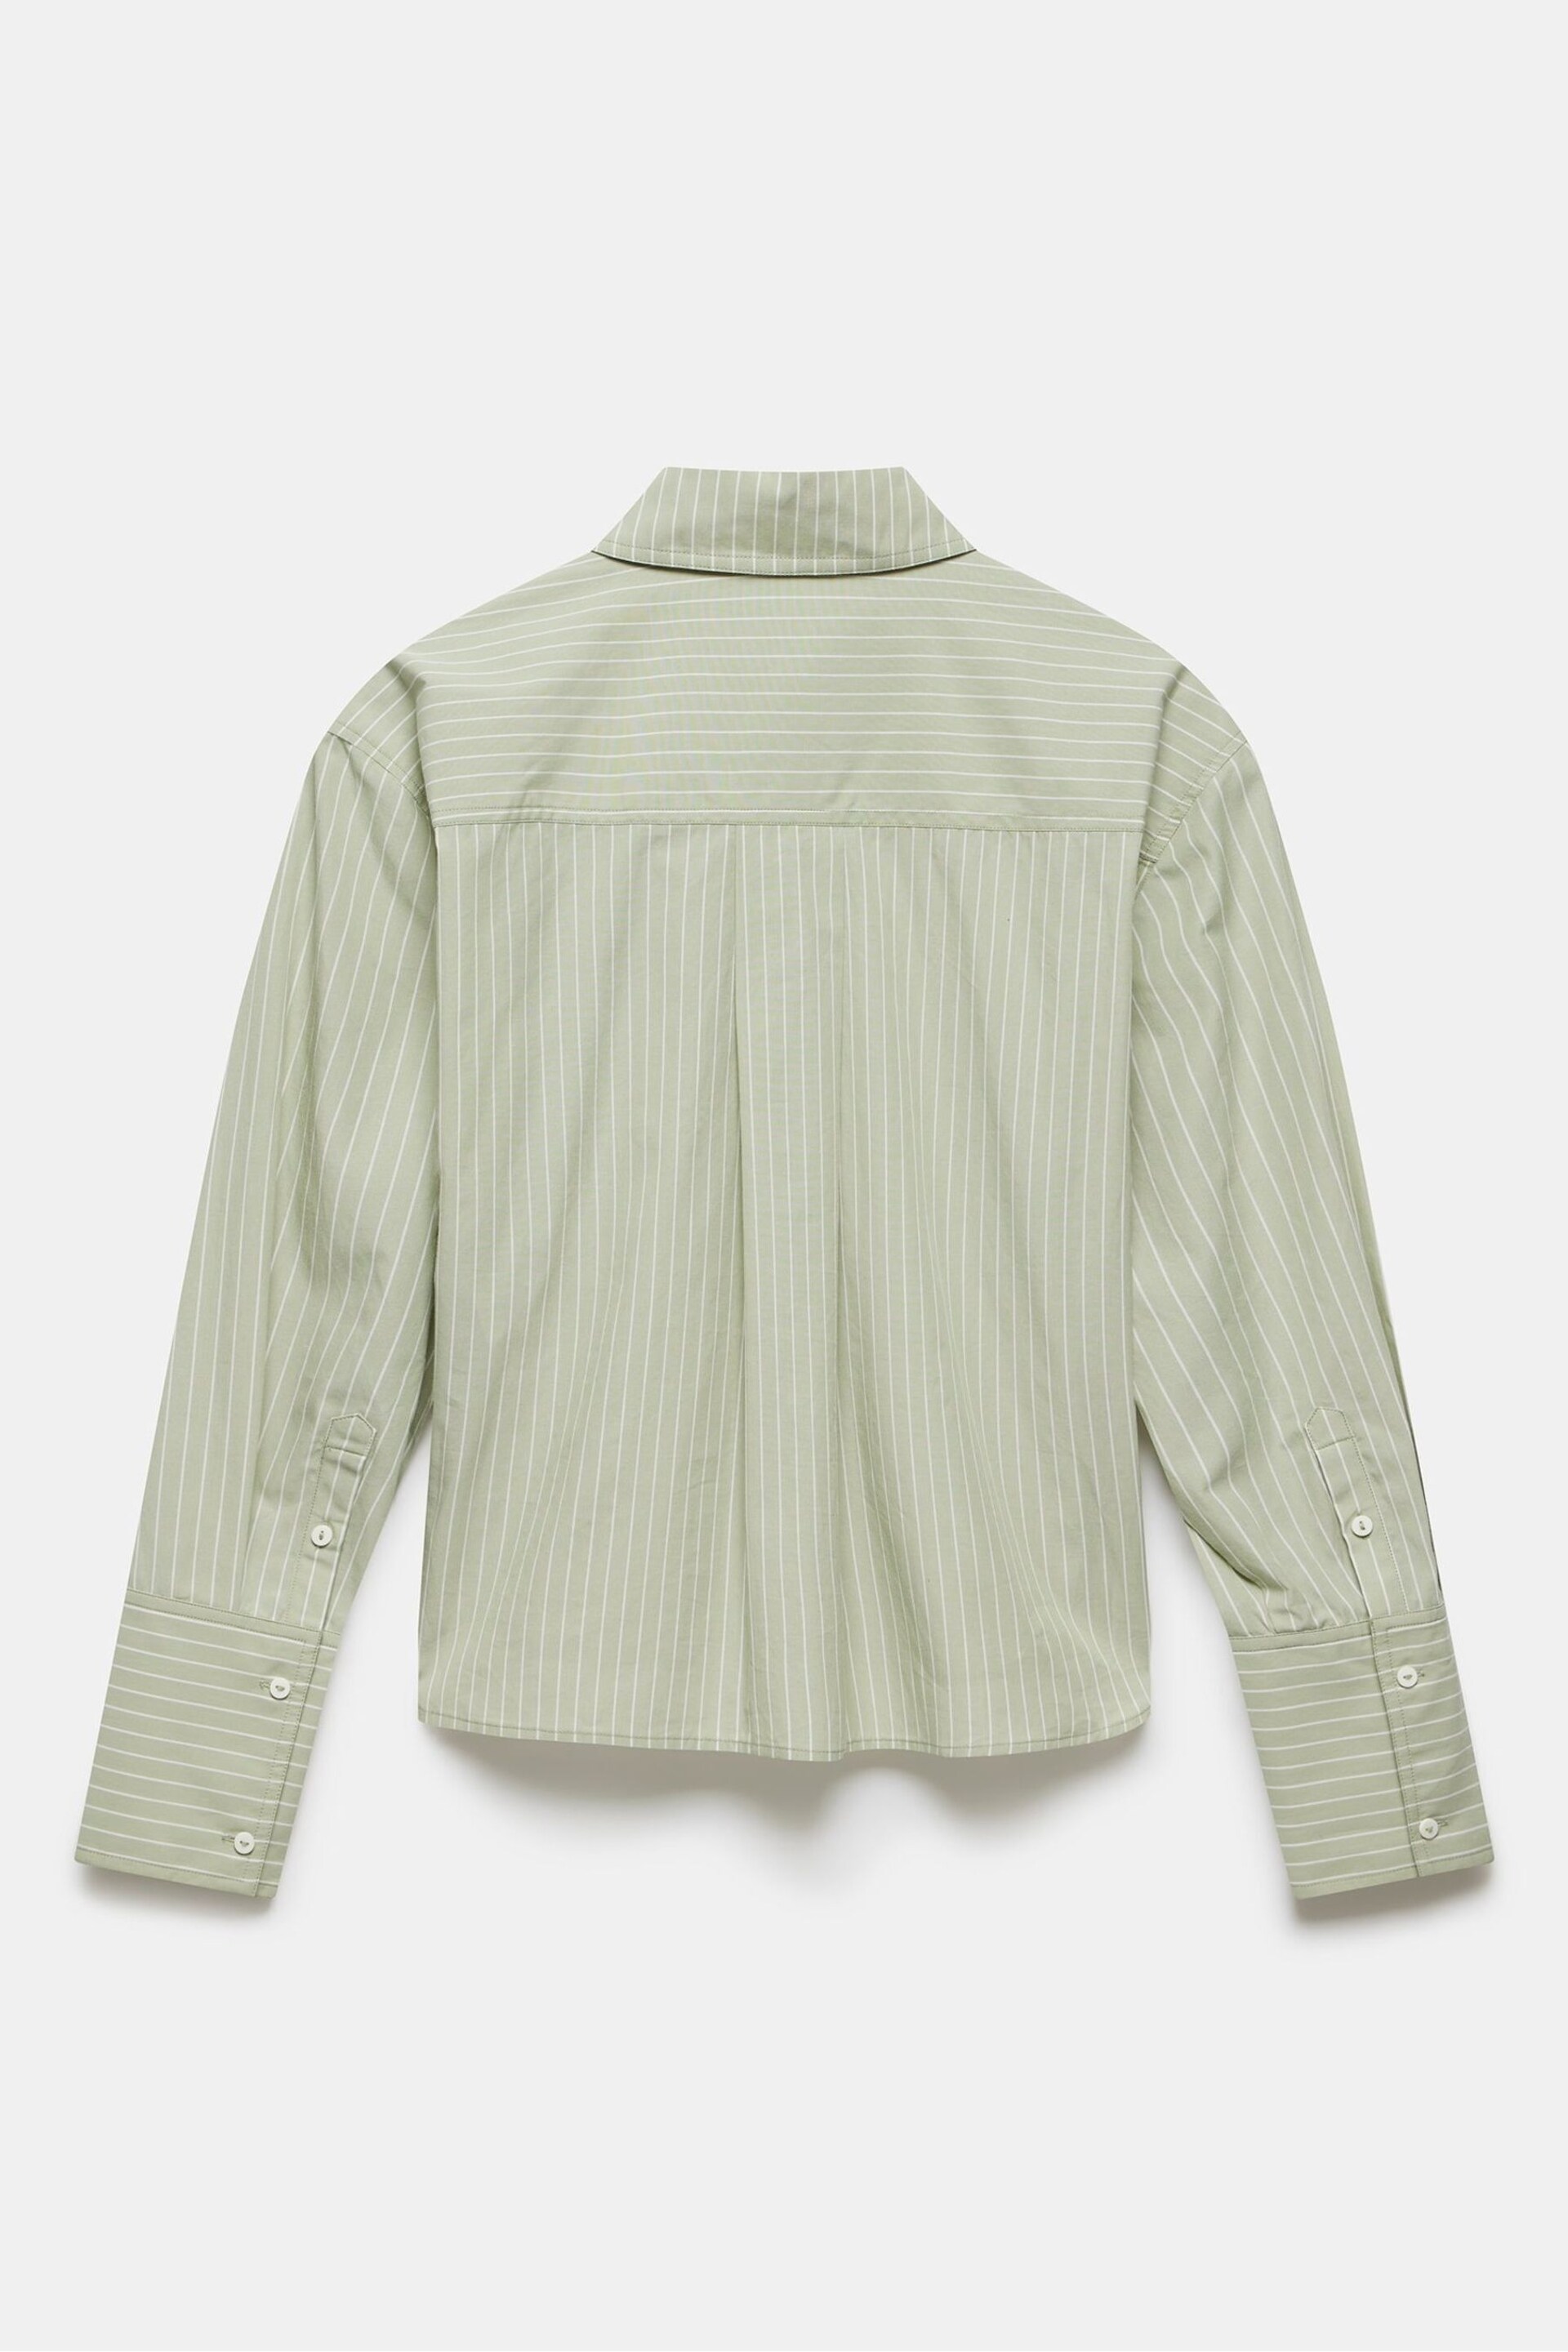 Mint Velvet Green Striped Cotton Shirt - Image 4 of 4